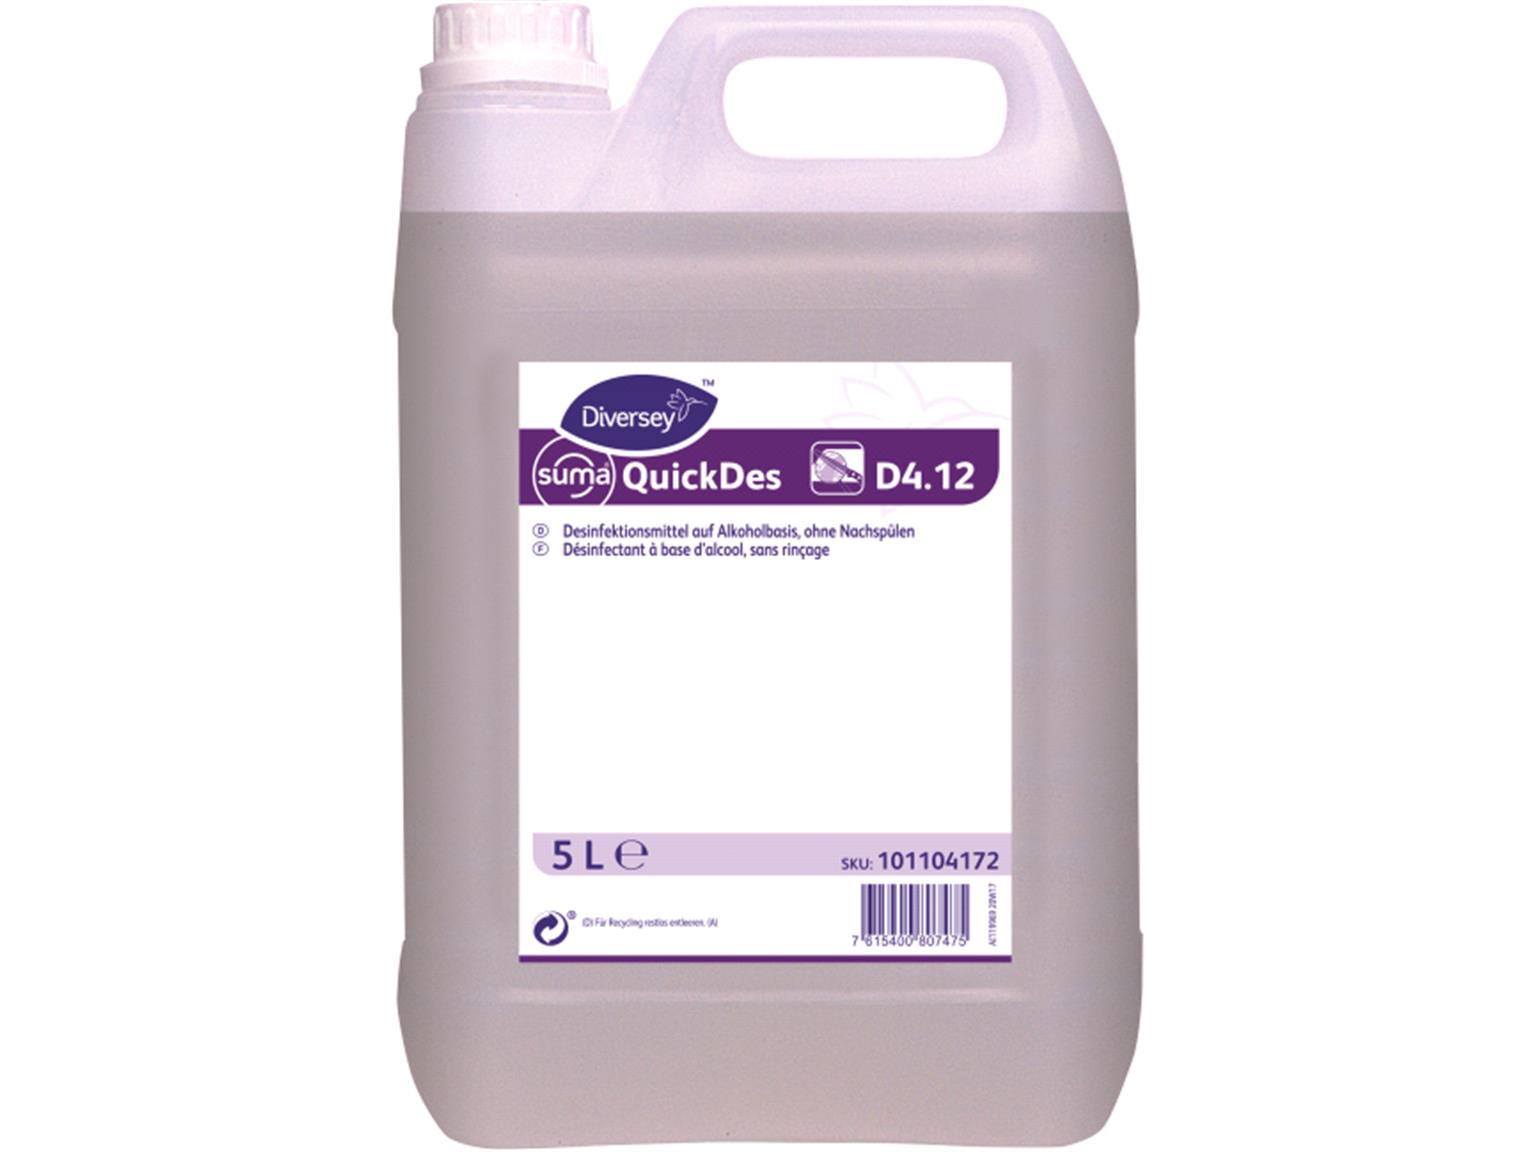 Suma QuickDes D4.12, Desinfektionsmittel auf Alkoholbasis, ohne Nachspülen